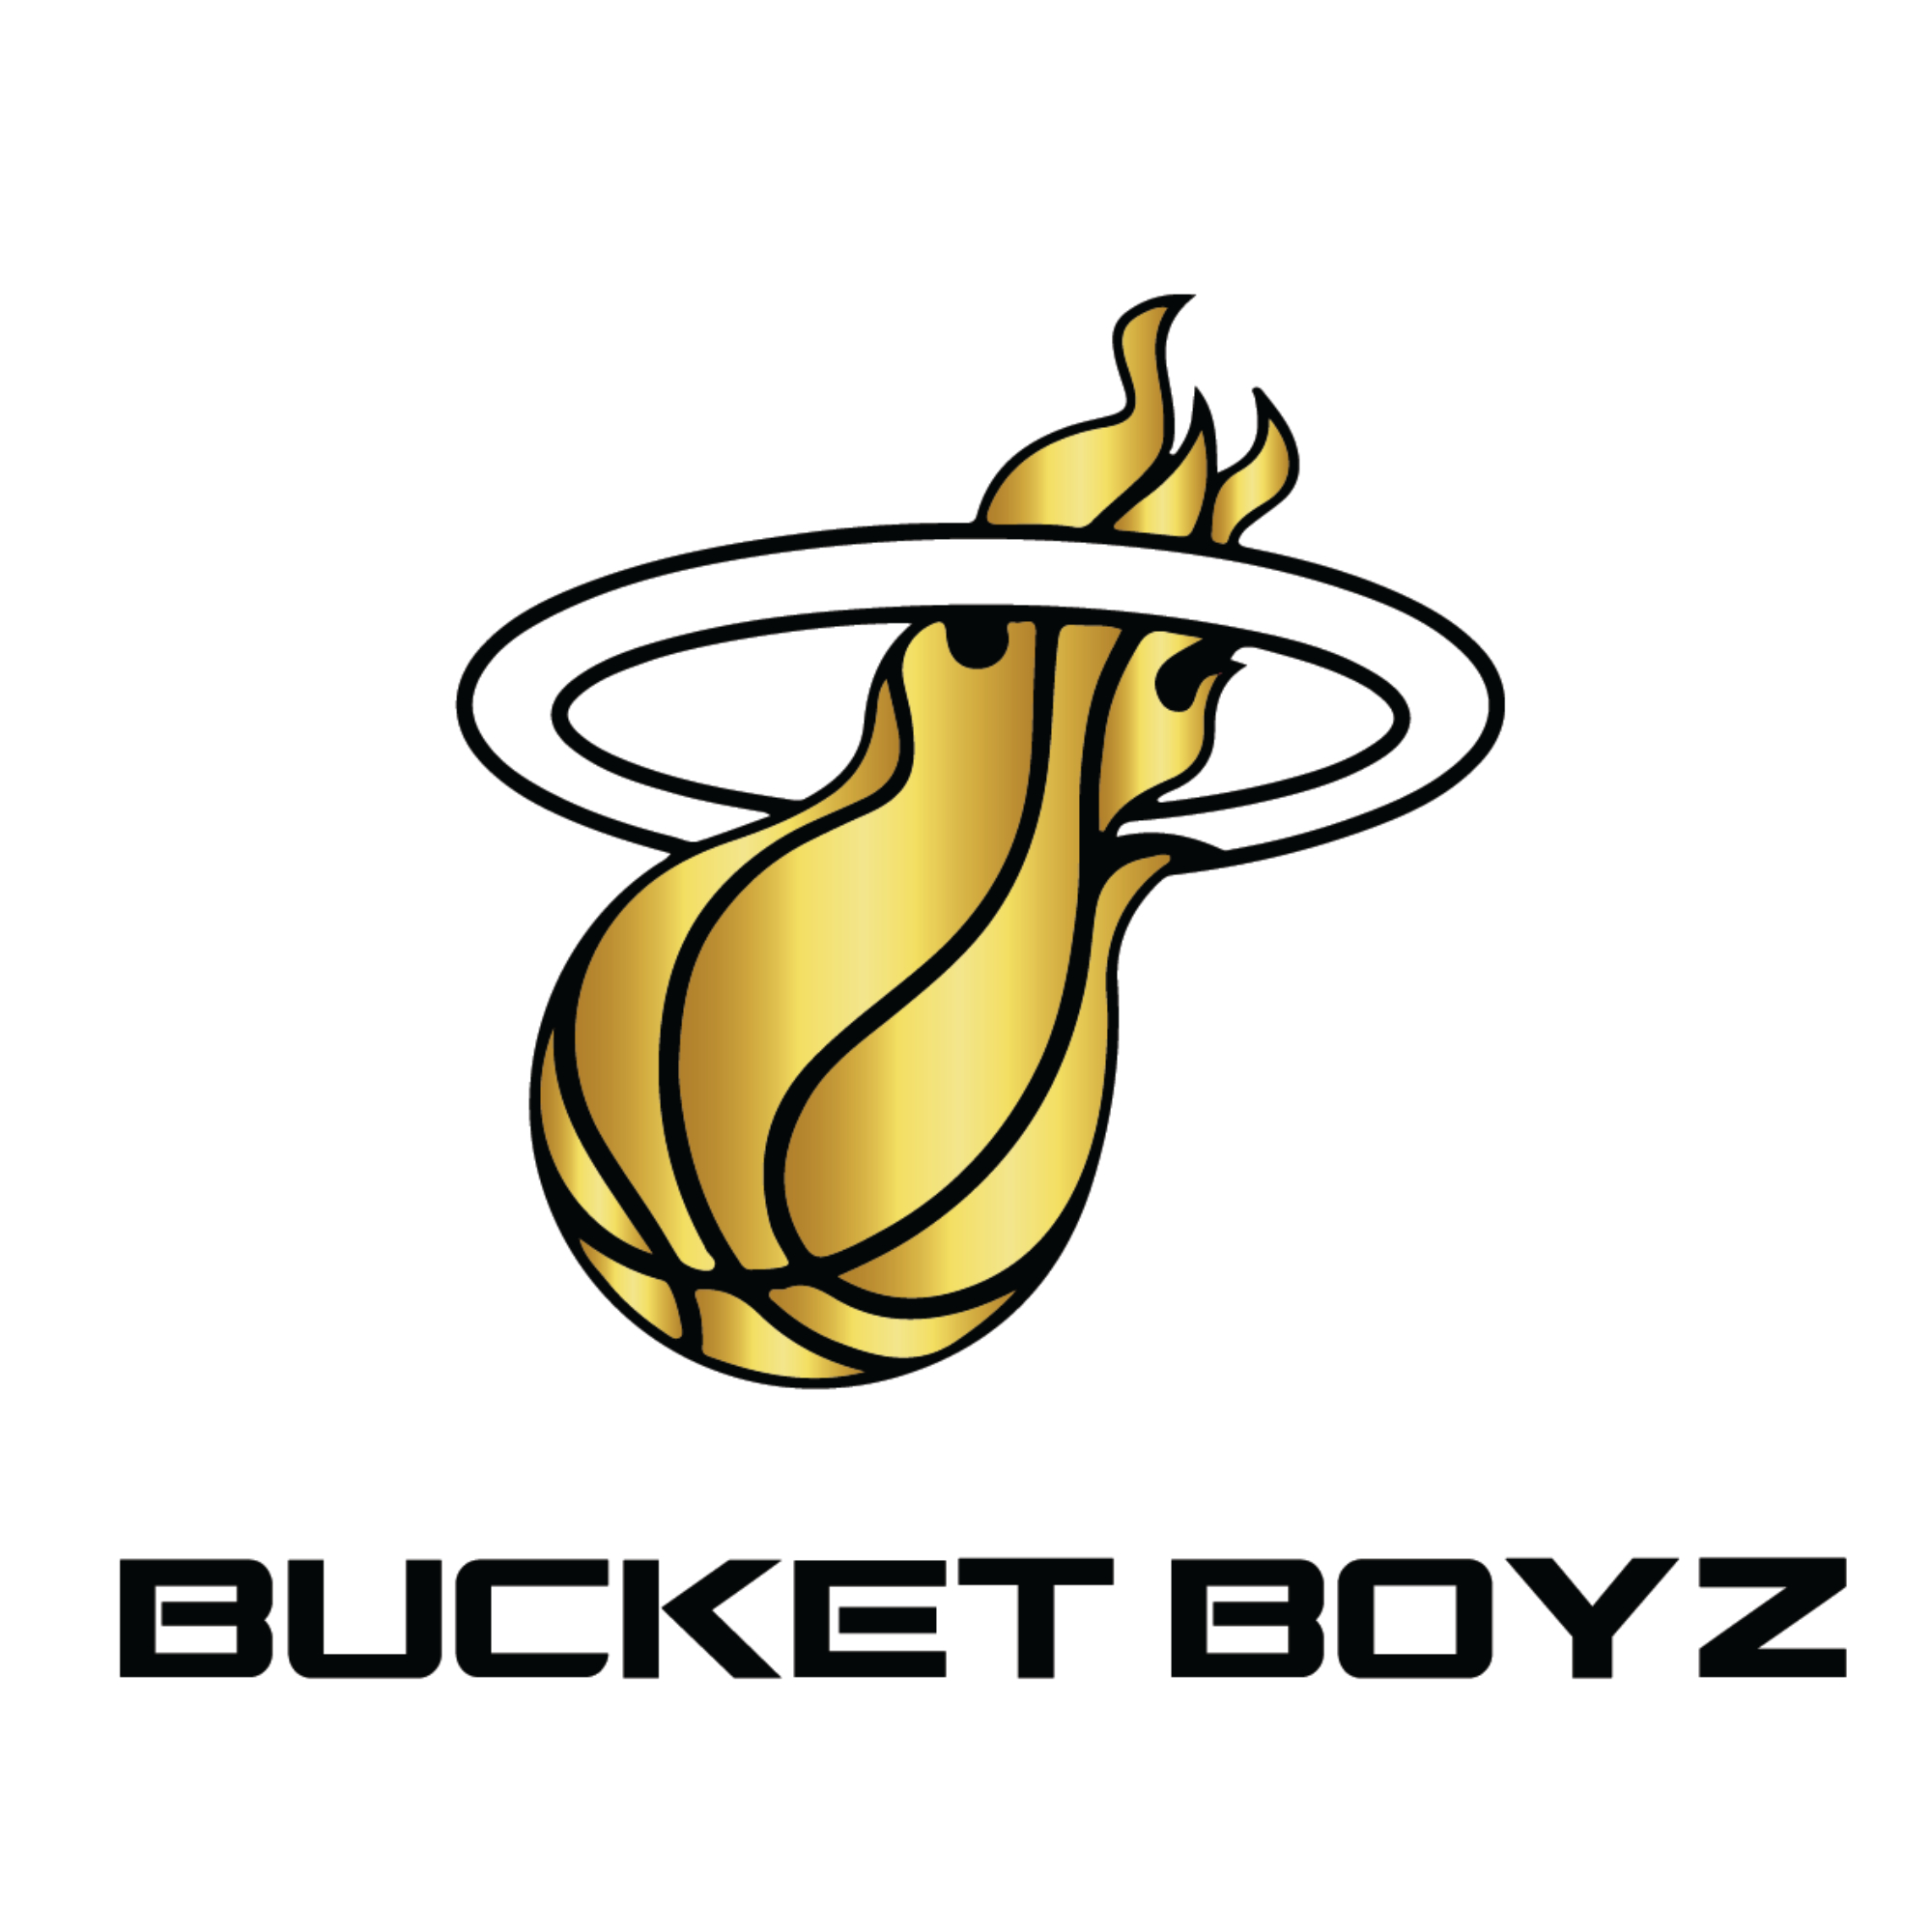 The official logo of Bucket Boyz Basketball